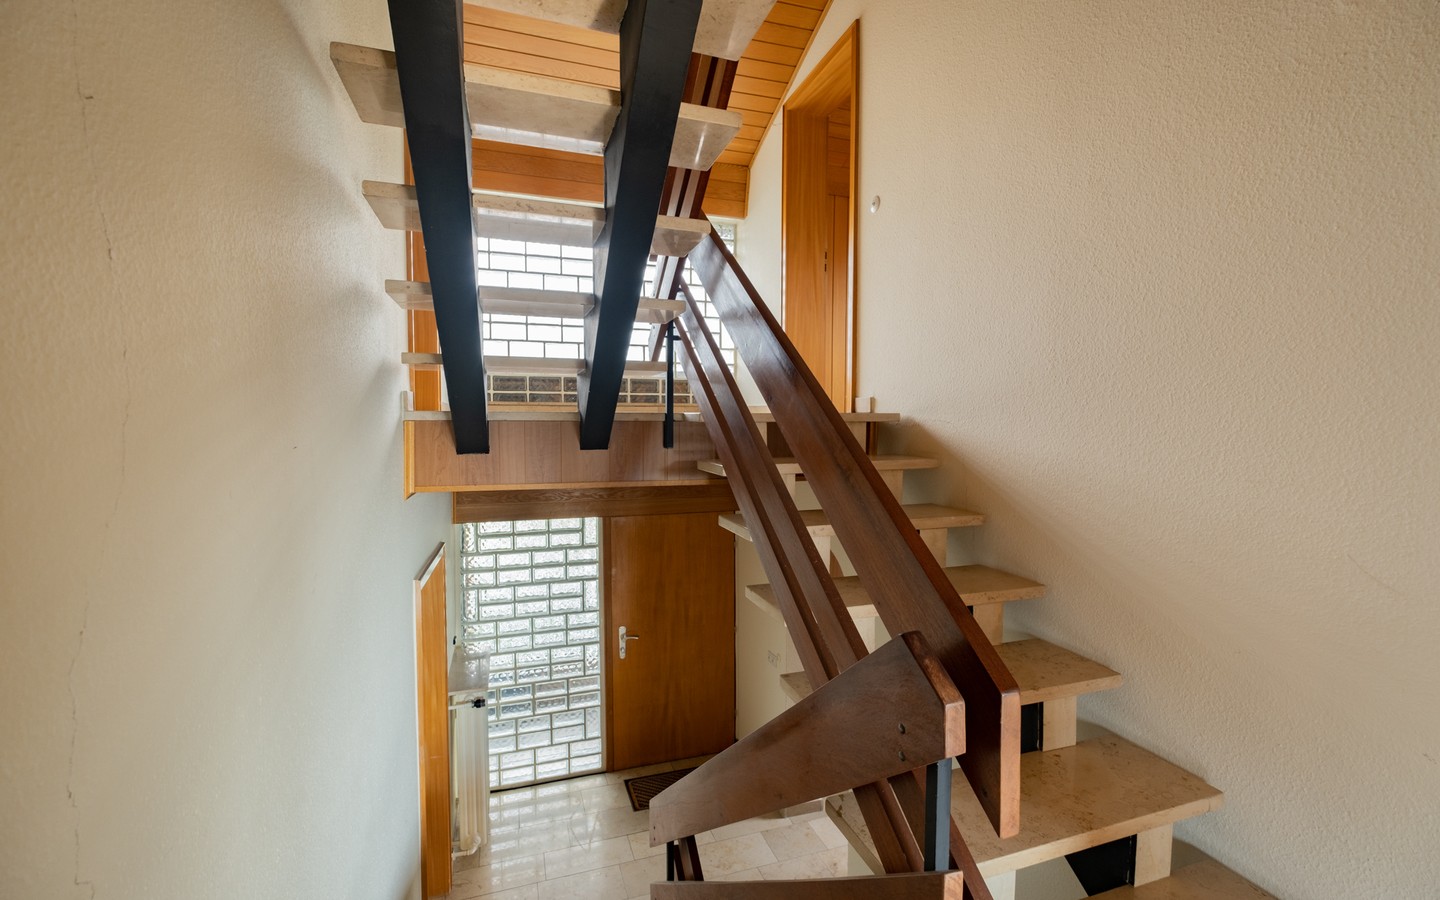 Treppenhaus - Leimen: freistehendes Haus in Splitlevelbauweise, mit 2 Garagen, 2 Stellplätzen und Garten